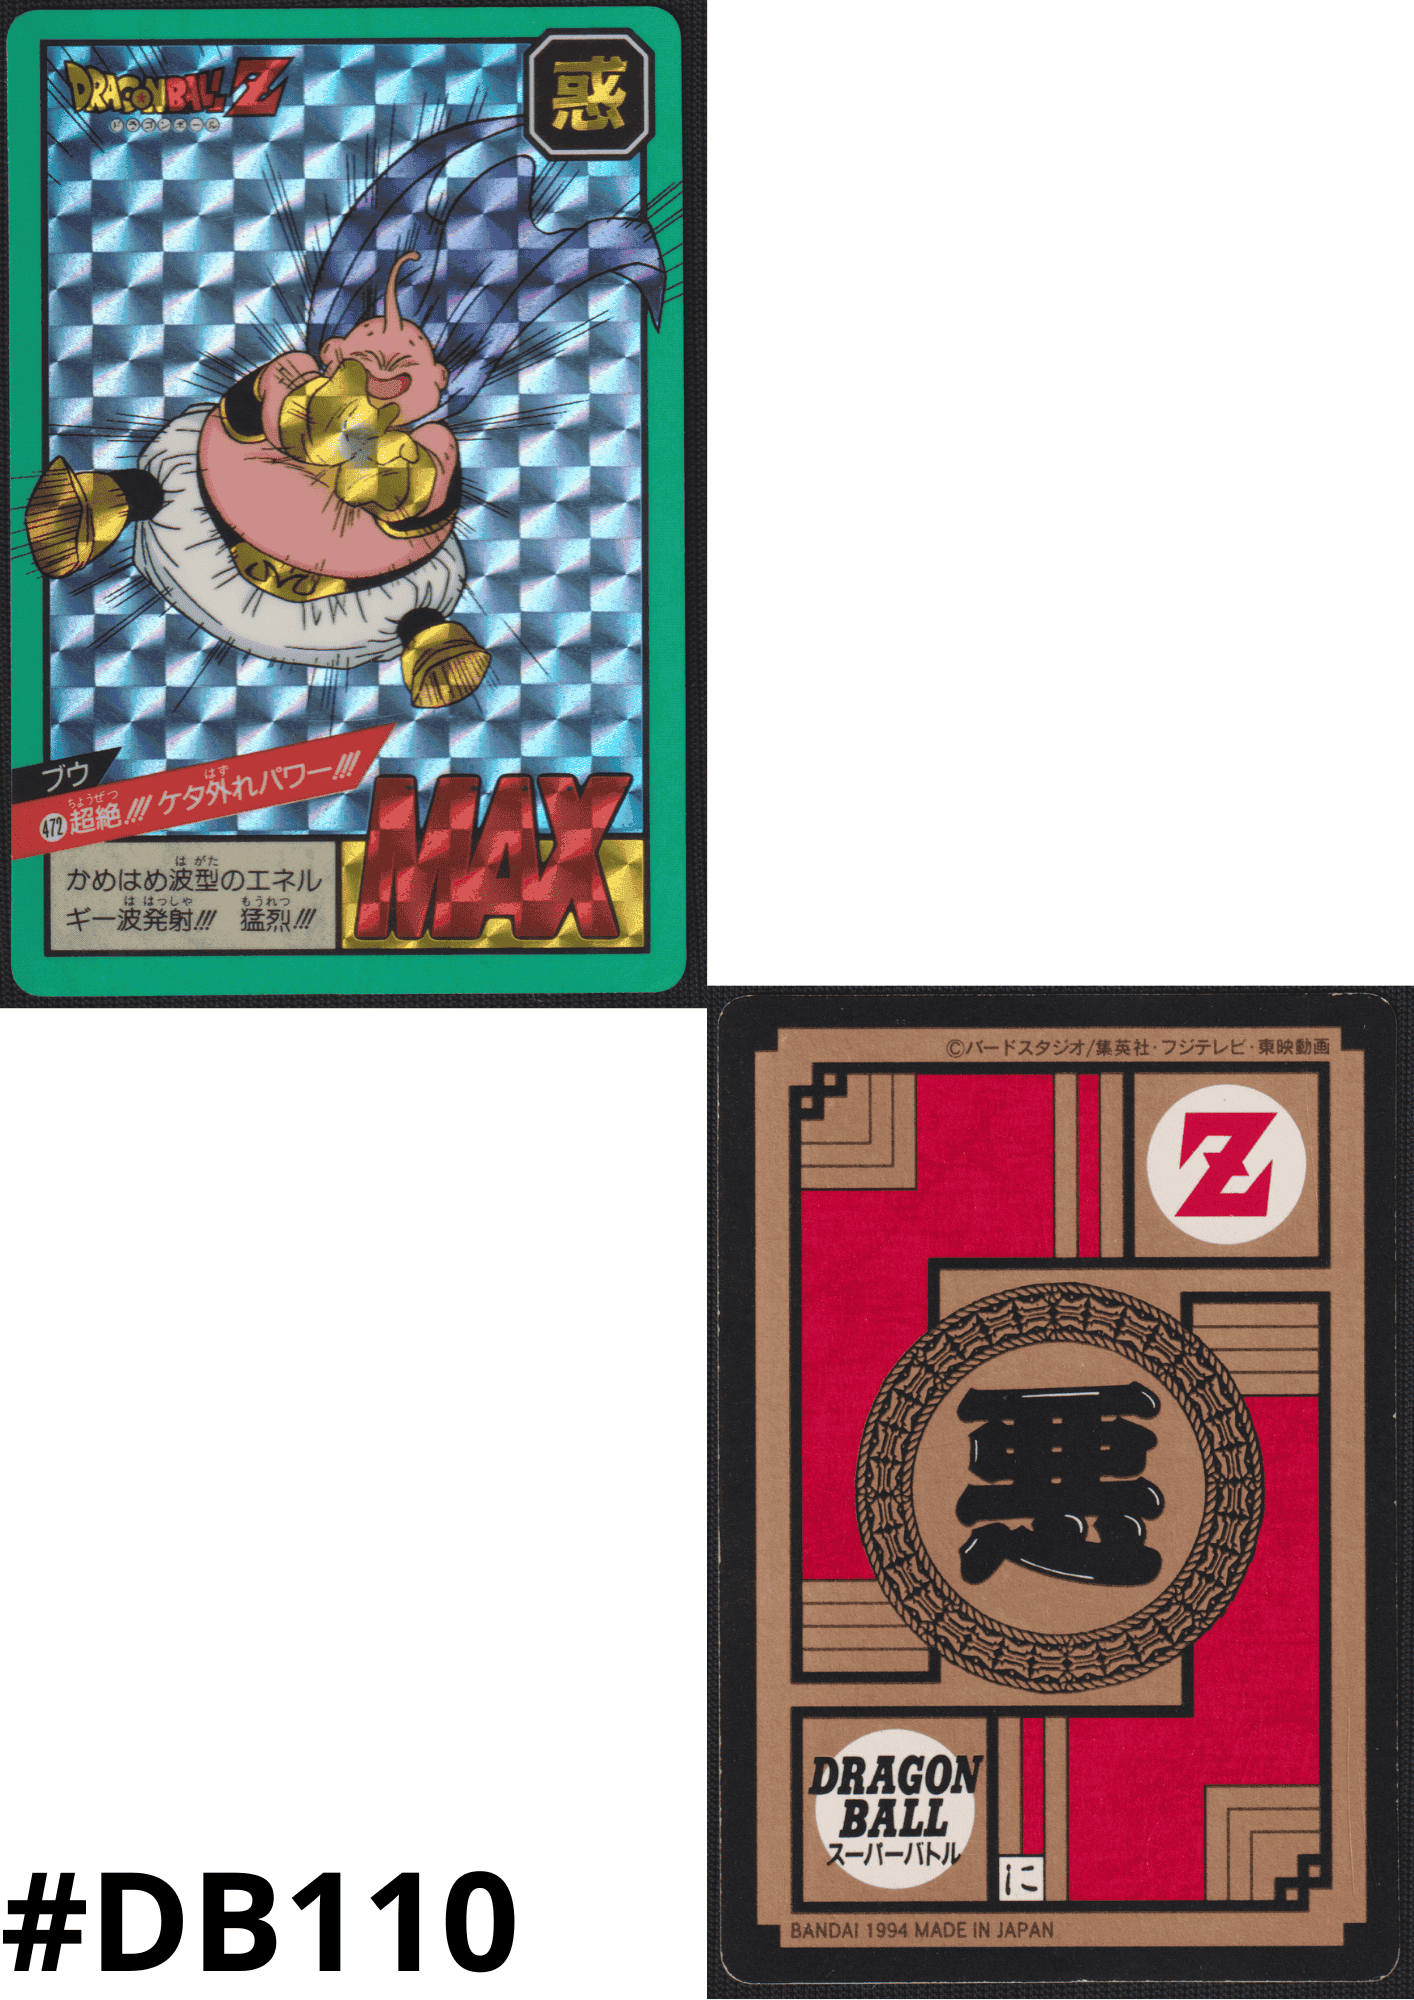 Buu Nr. 472 | Carddass Super Battle ChitoroShop